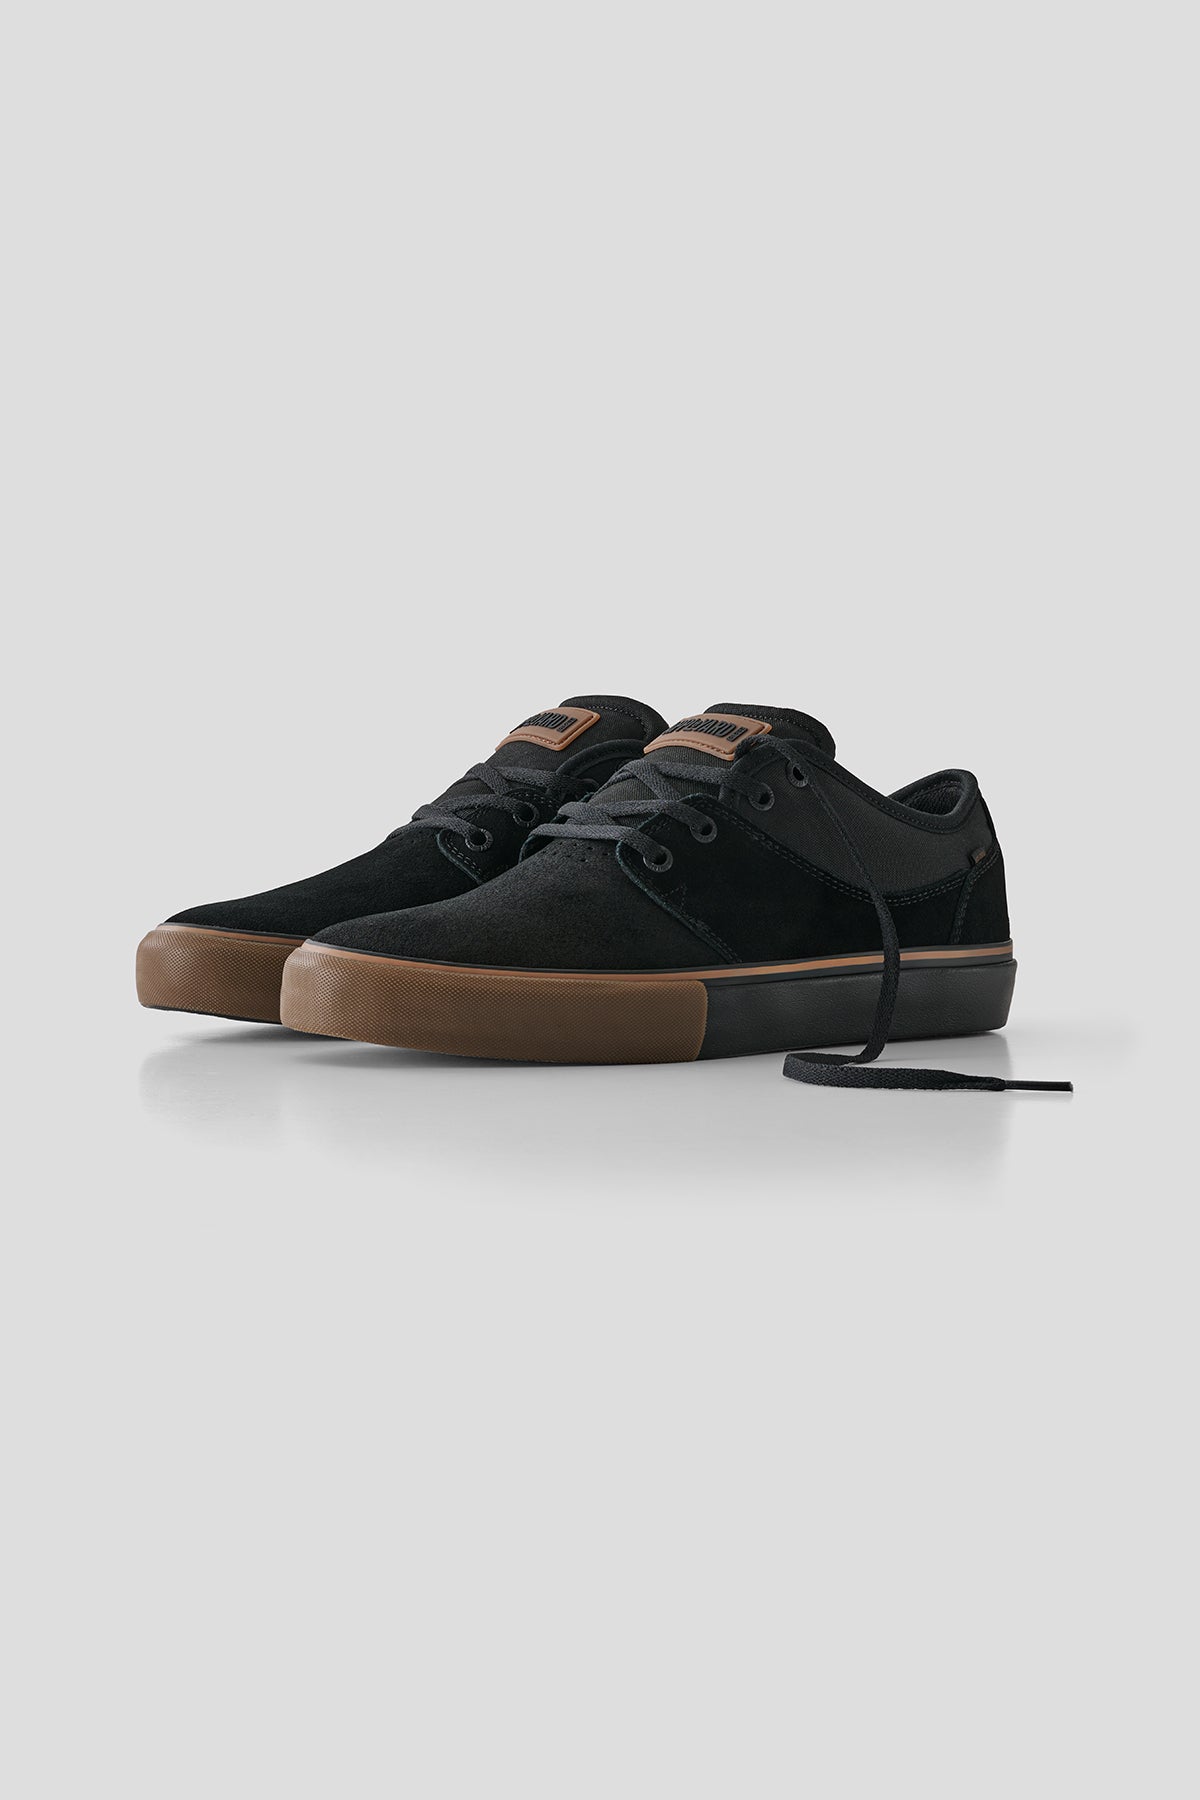 Mahalo - Negro/Goma - skateboard Zapatos